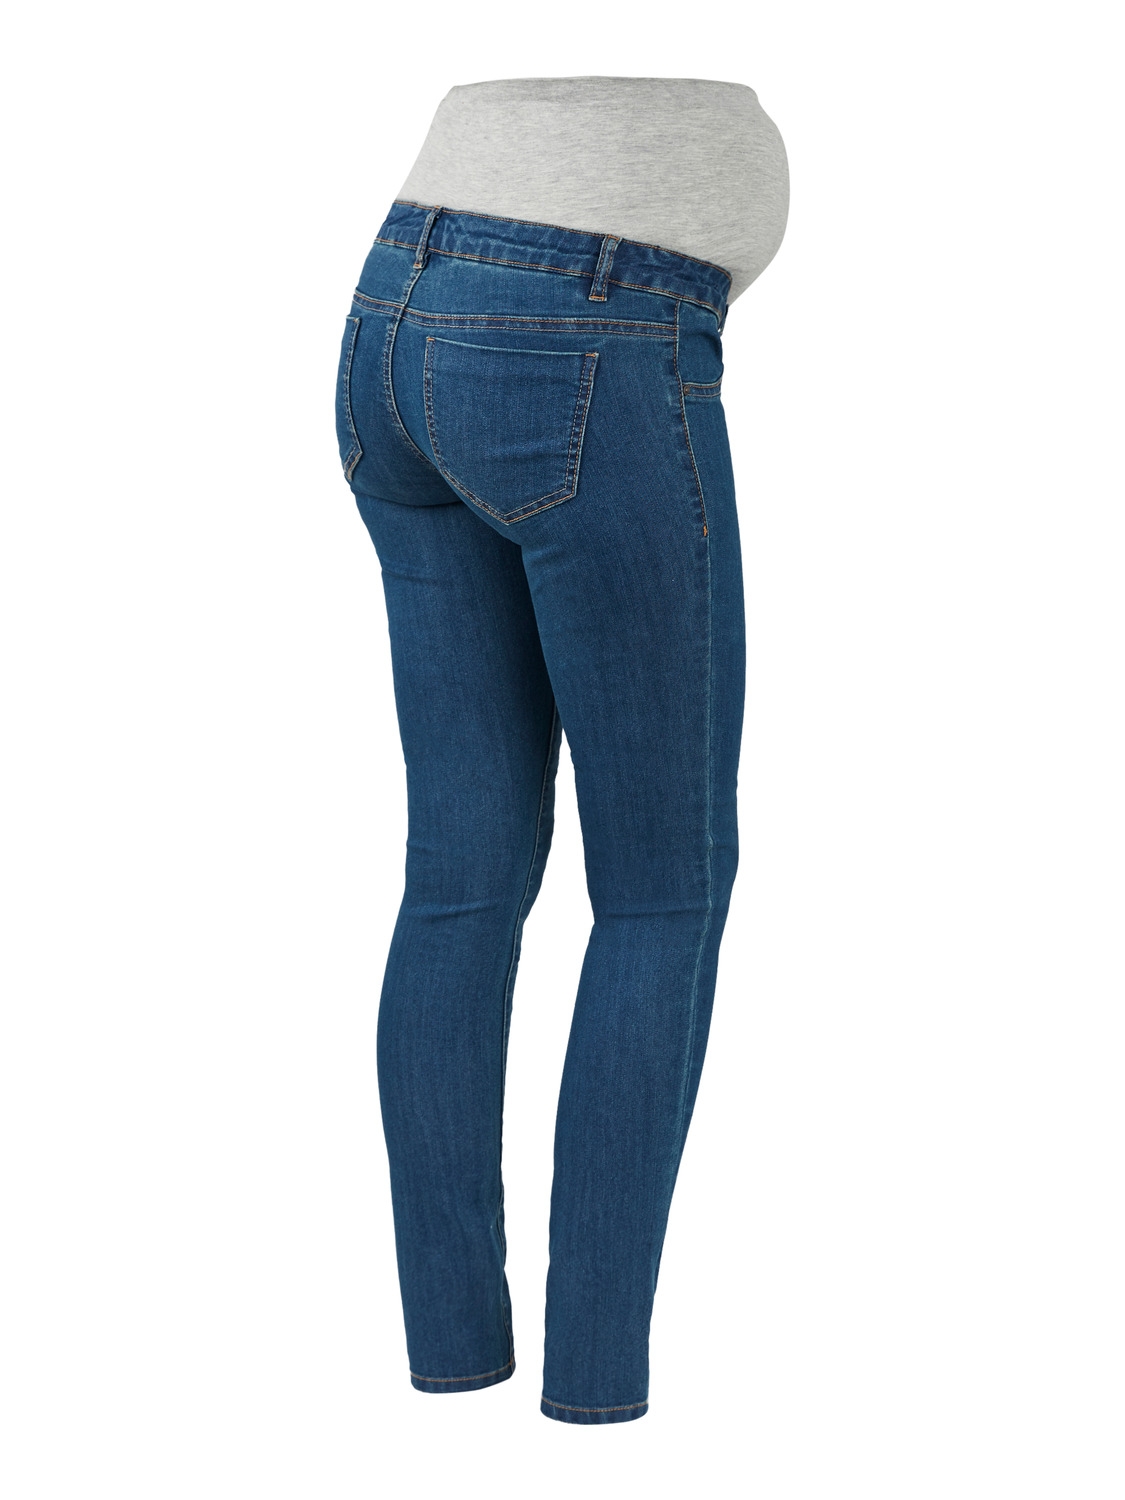 MAMA.LICIOUS Slim Fit Jeans -Medium Blue Denim - 20011908